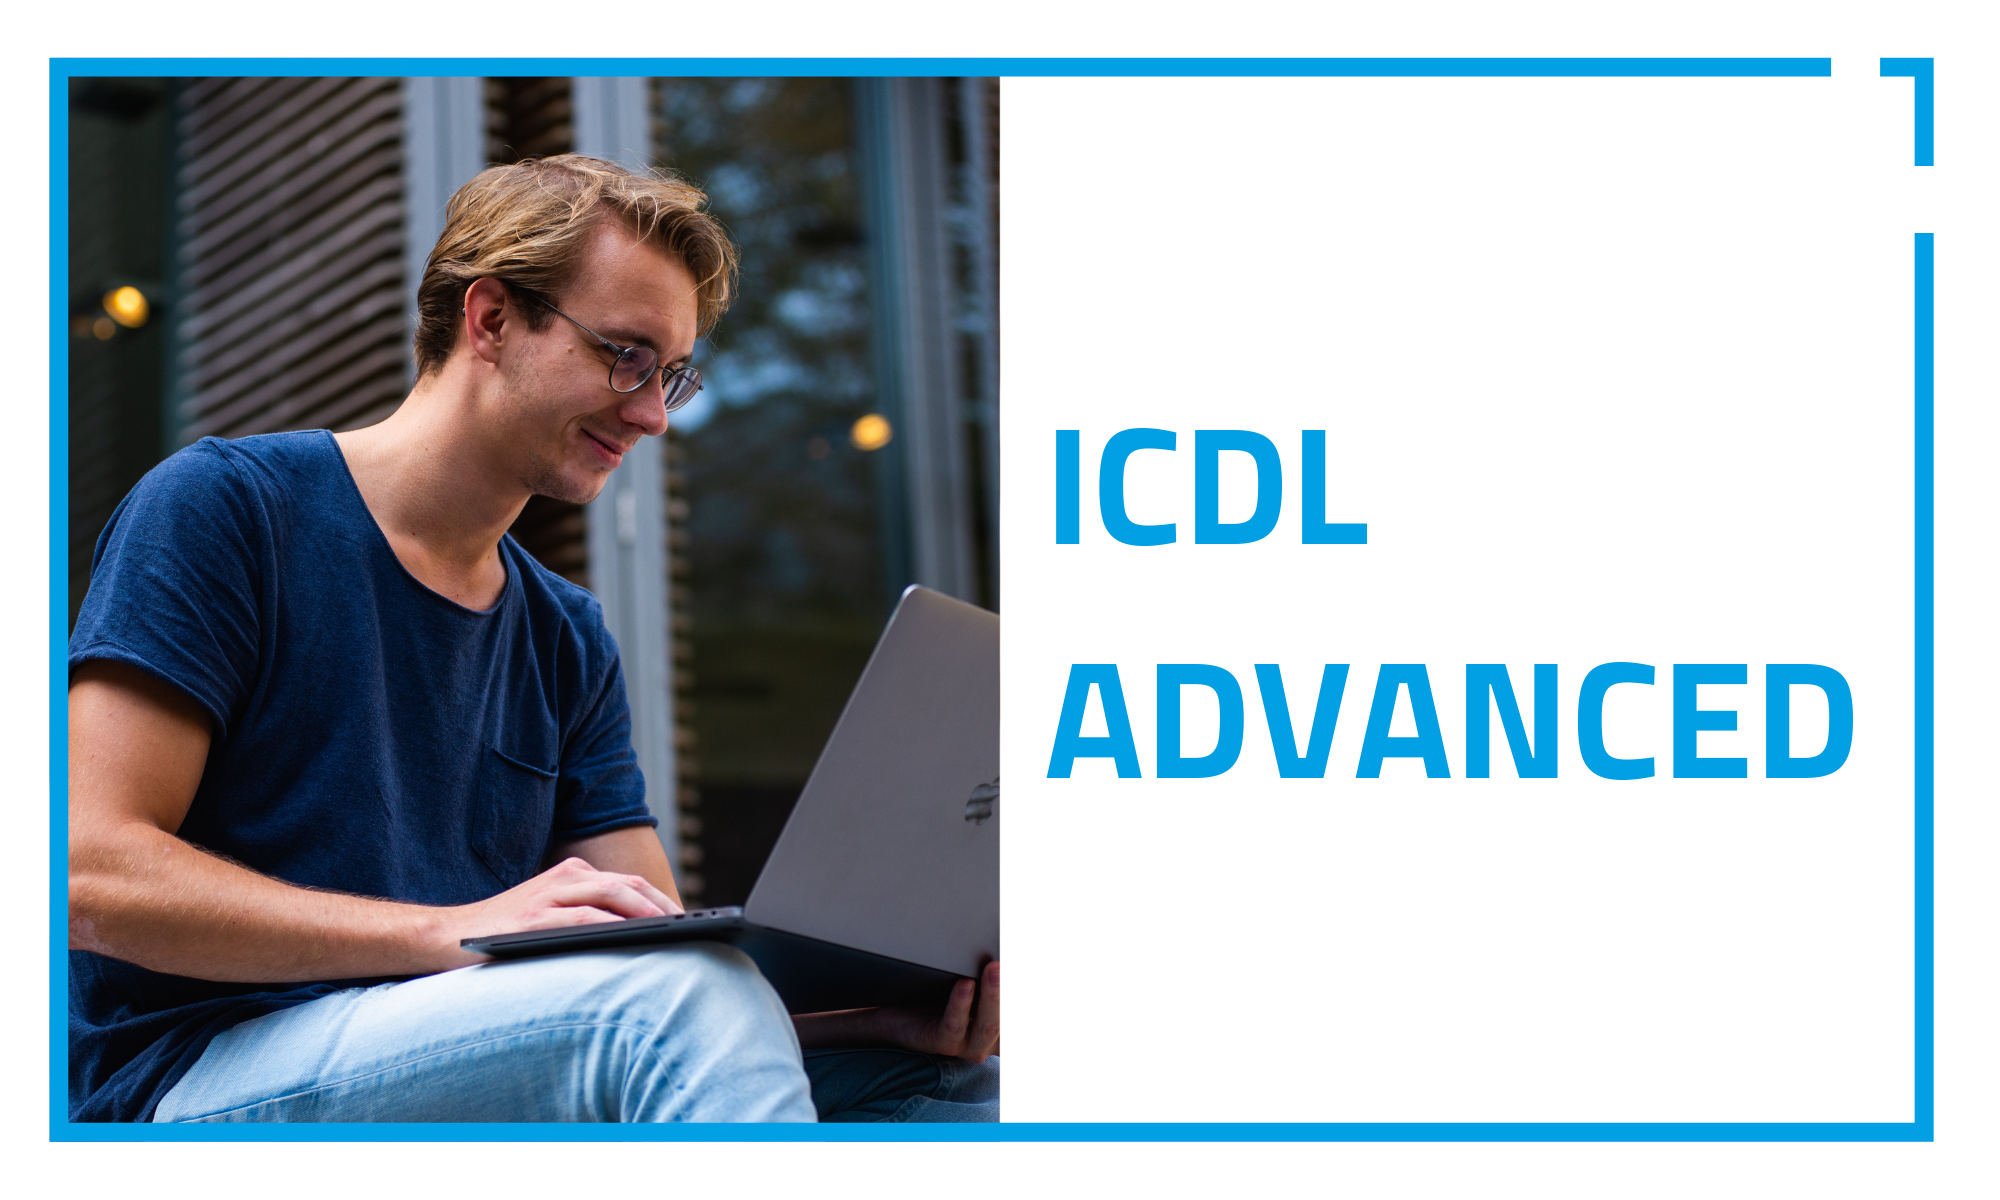 Competenze avanzate nell'utilizzo del computer per studenti, professionisti e dipendenti d'azienda: segui i corsi ECDL advanced